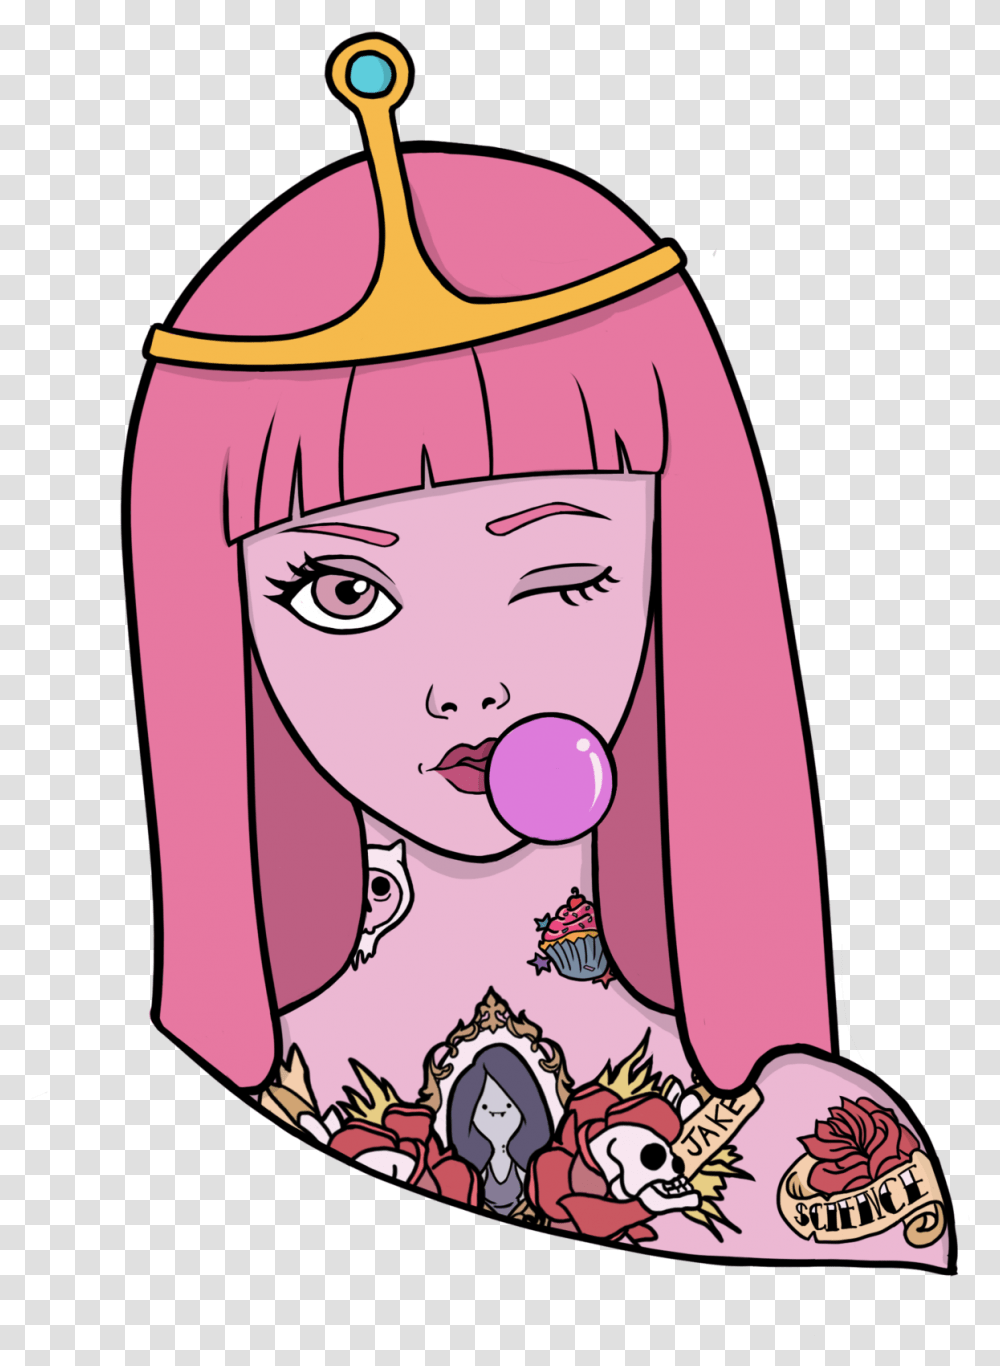 Princess Bubblegum Portrait By Guiganoide Features Prinzessin Bubblegum Adventure Tome, Drawing, Doodle Transparent Png